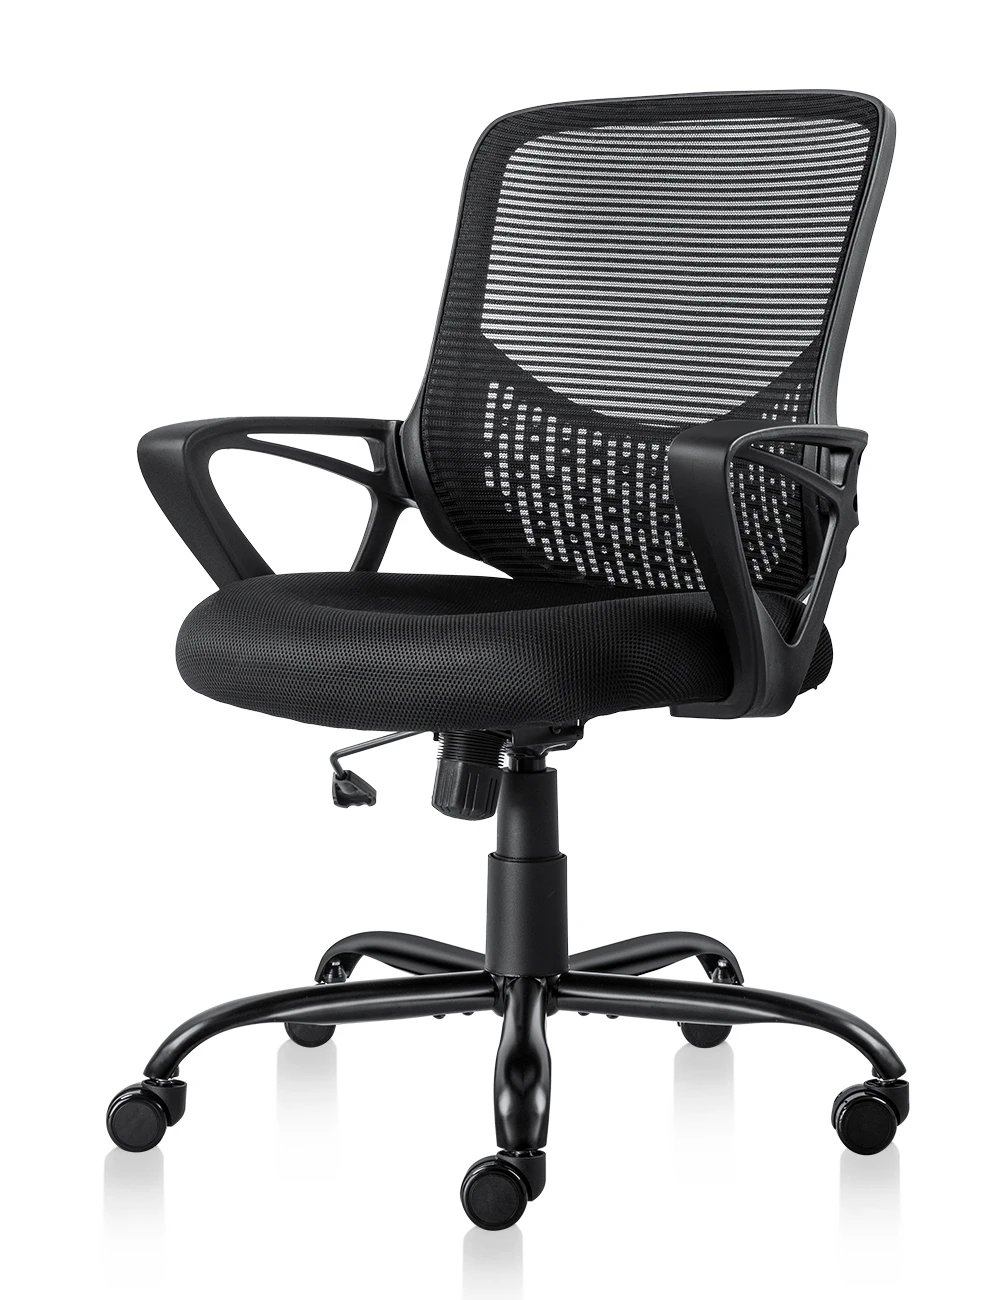 Сетчатая спинка. Кресло sberfin1. Кресло офисное / Ergo / черный пластик/черная сетка/черная ткань. Офисный стул с сеткой Azzo. Офисное кресло Insite Smart.